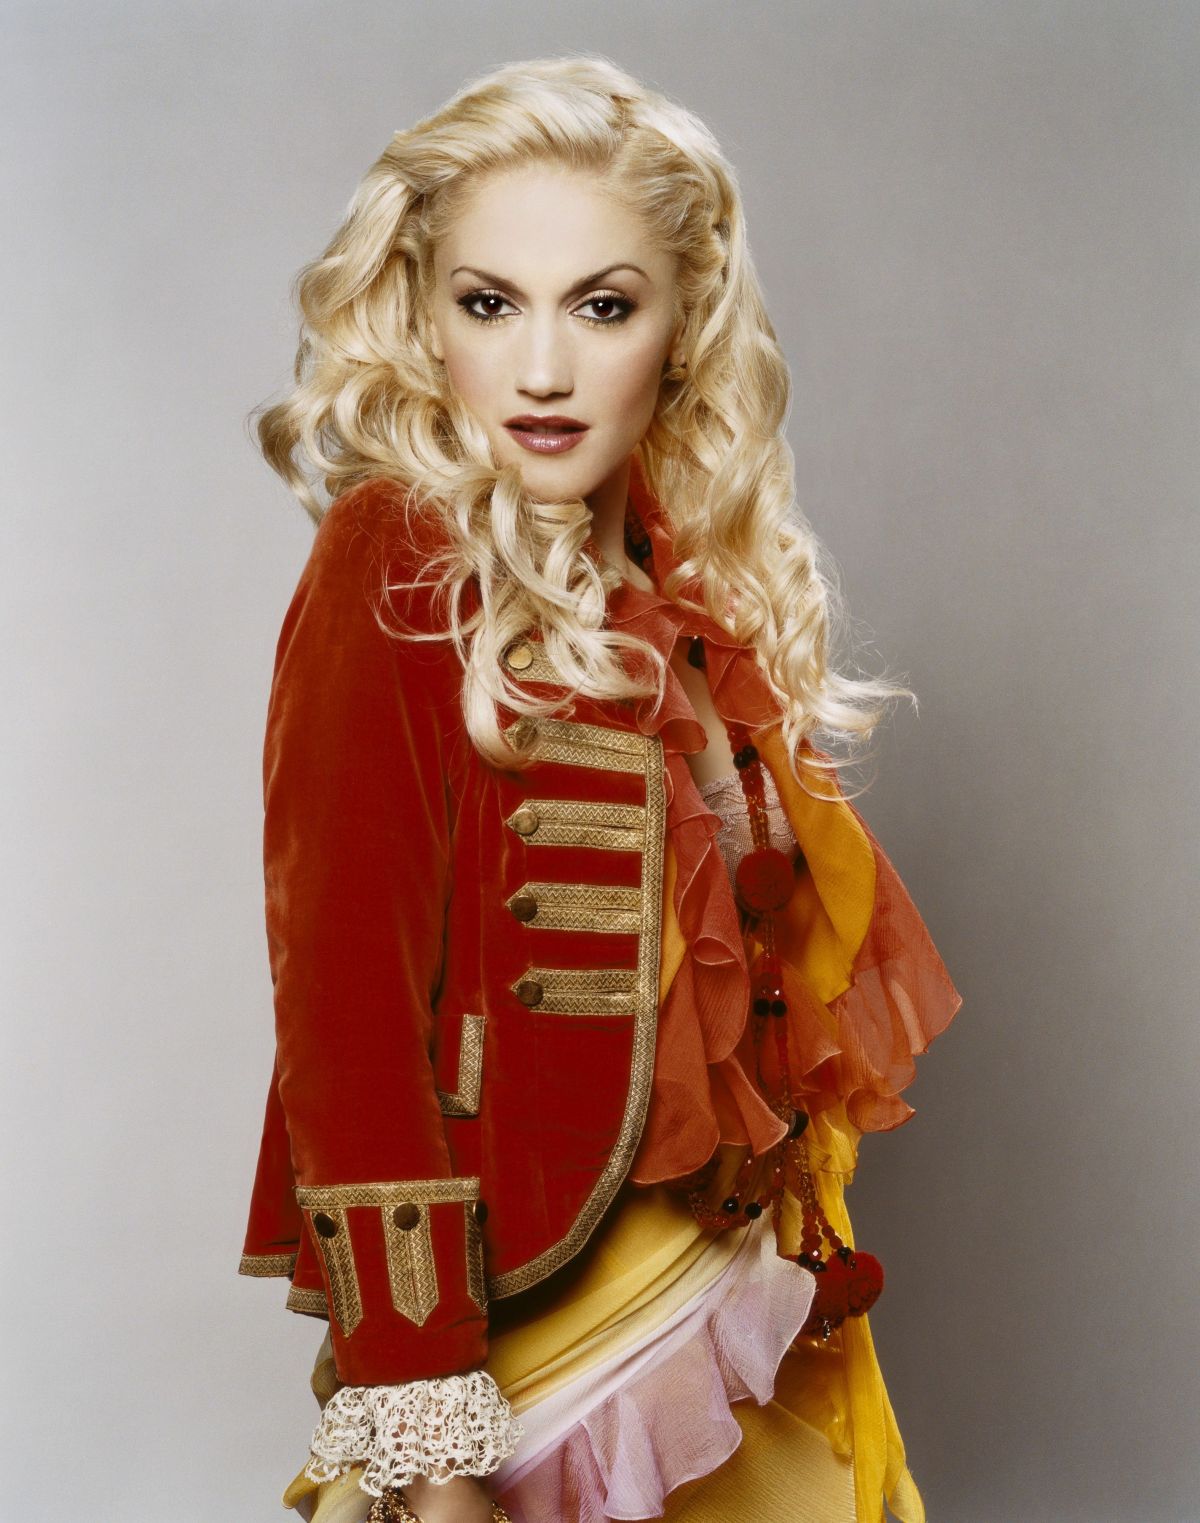 Gwen Stefani Throwback Photoshoot for Glamour Magazine 2005 Issue 9